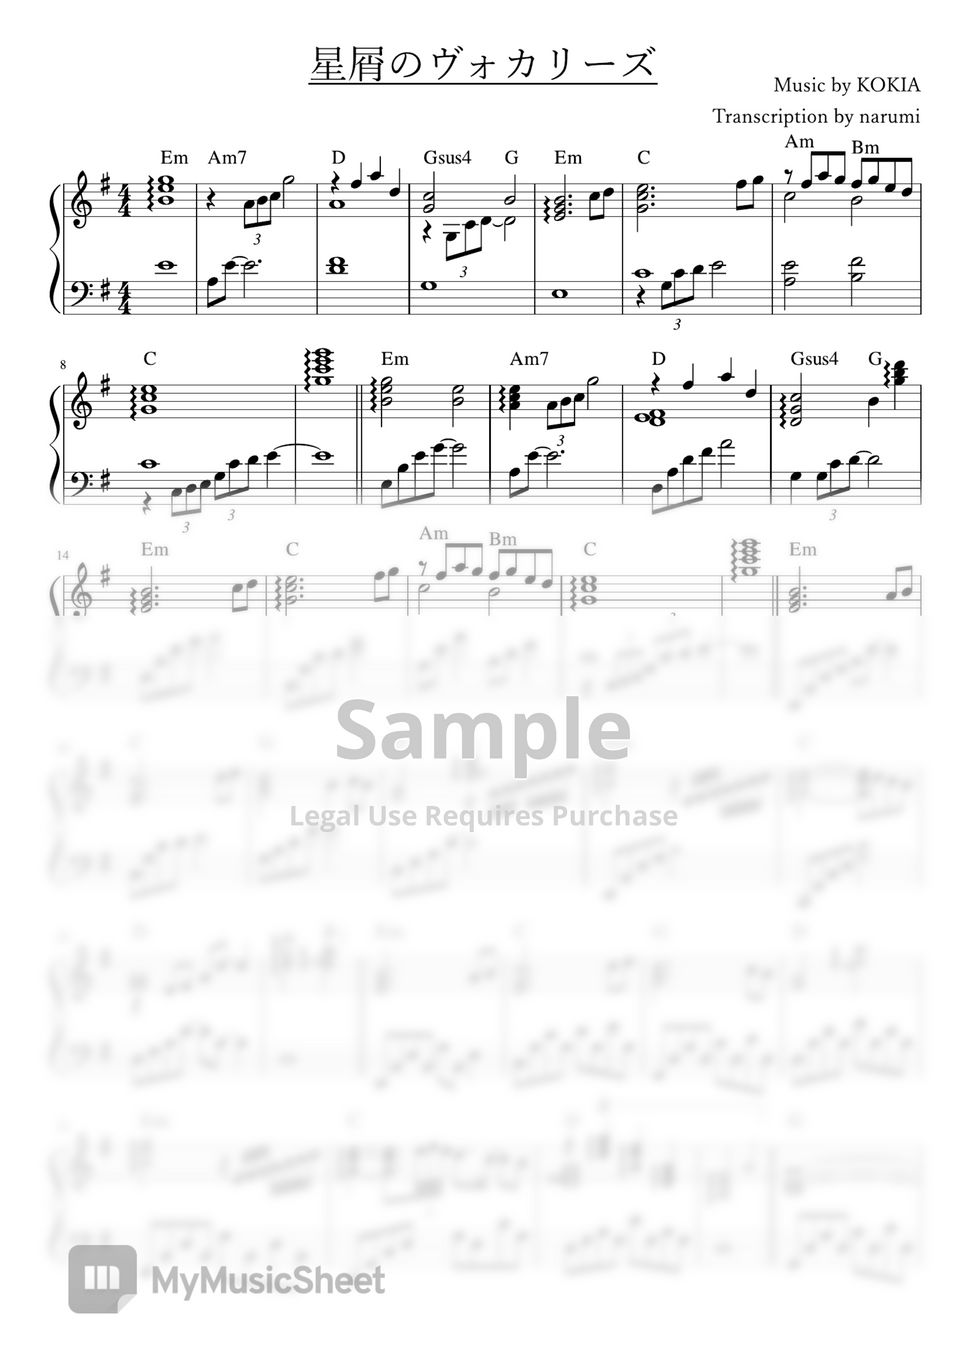 KOKIA - Hoshikuzu no Vocalise 星屑のヴォカリーズ[Piano Sheet + MIDI]